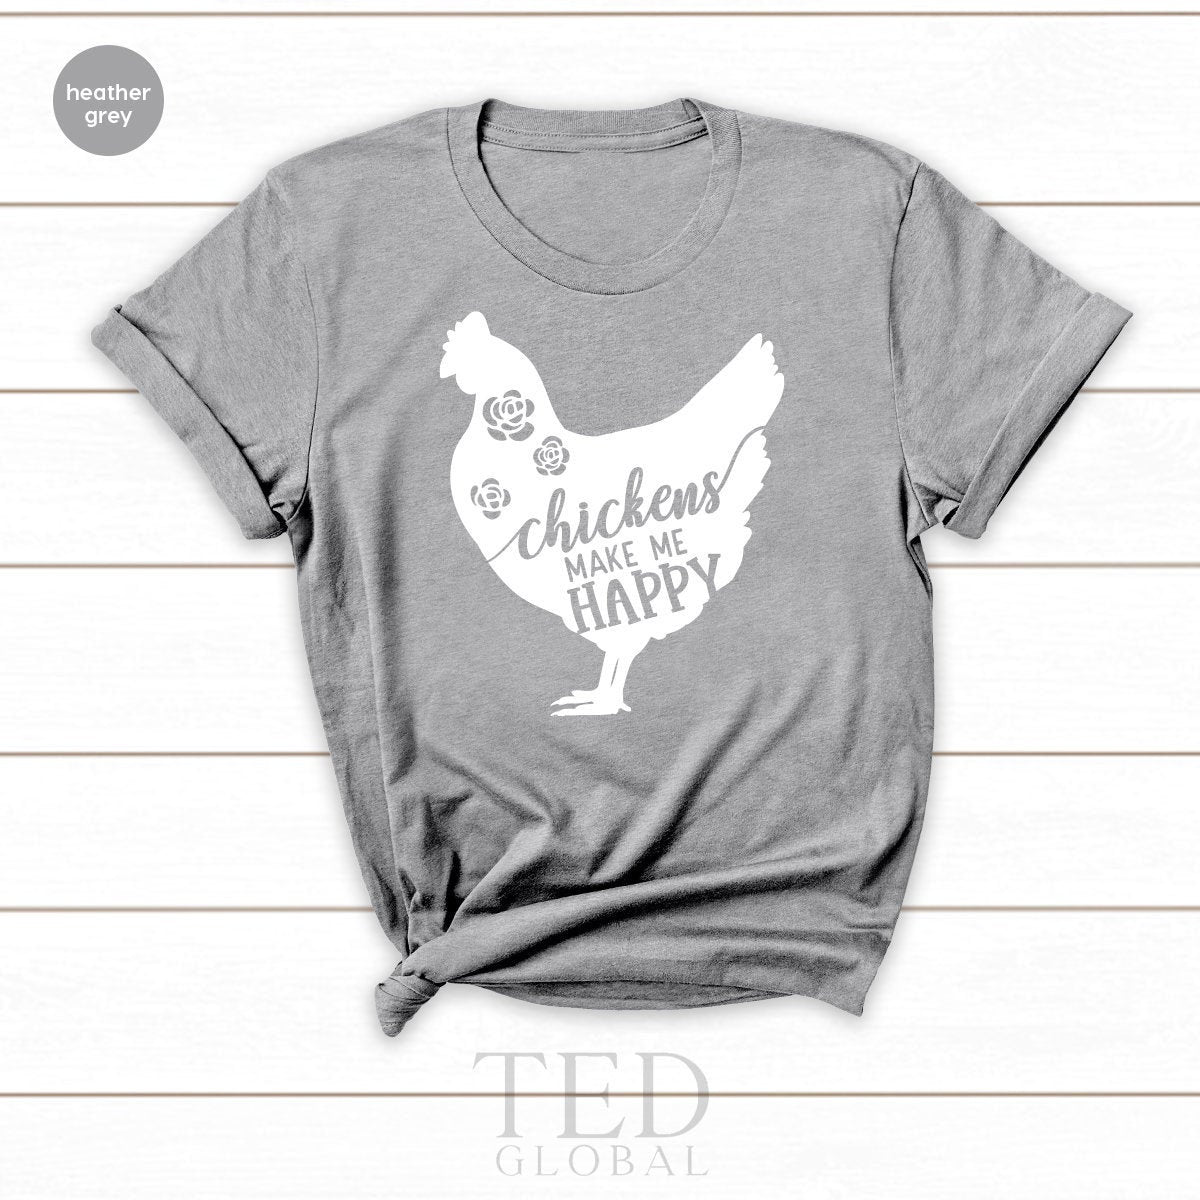 Chicken TShirt, Chicken Lover T Shirt, Funny Chicken Tee, Floral Chicken Shirt, Chicken Make Me Happy, Chicken Farmer Shirt, Farm Mom Shirt - Fastdeliverytees.com